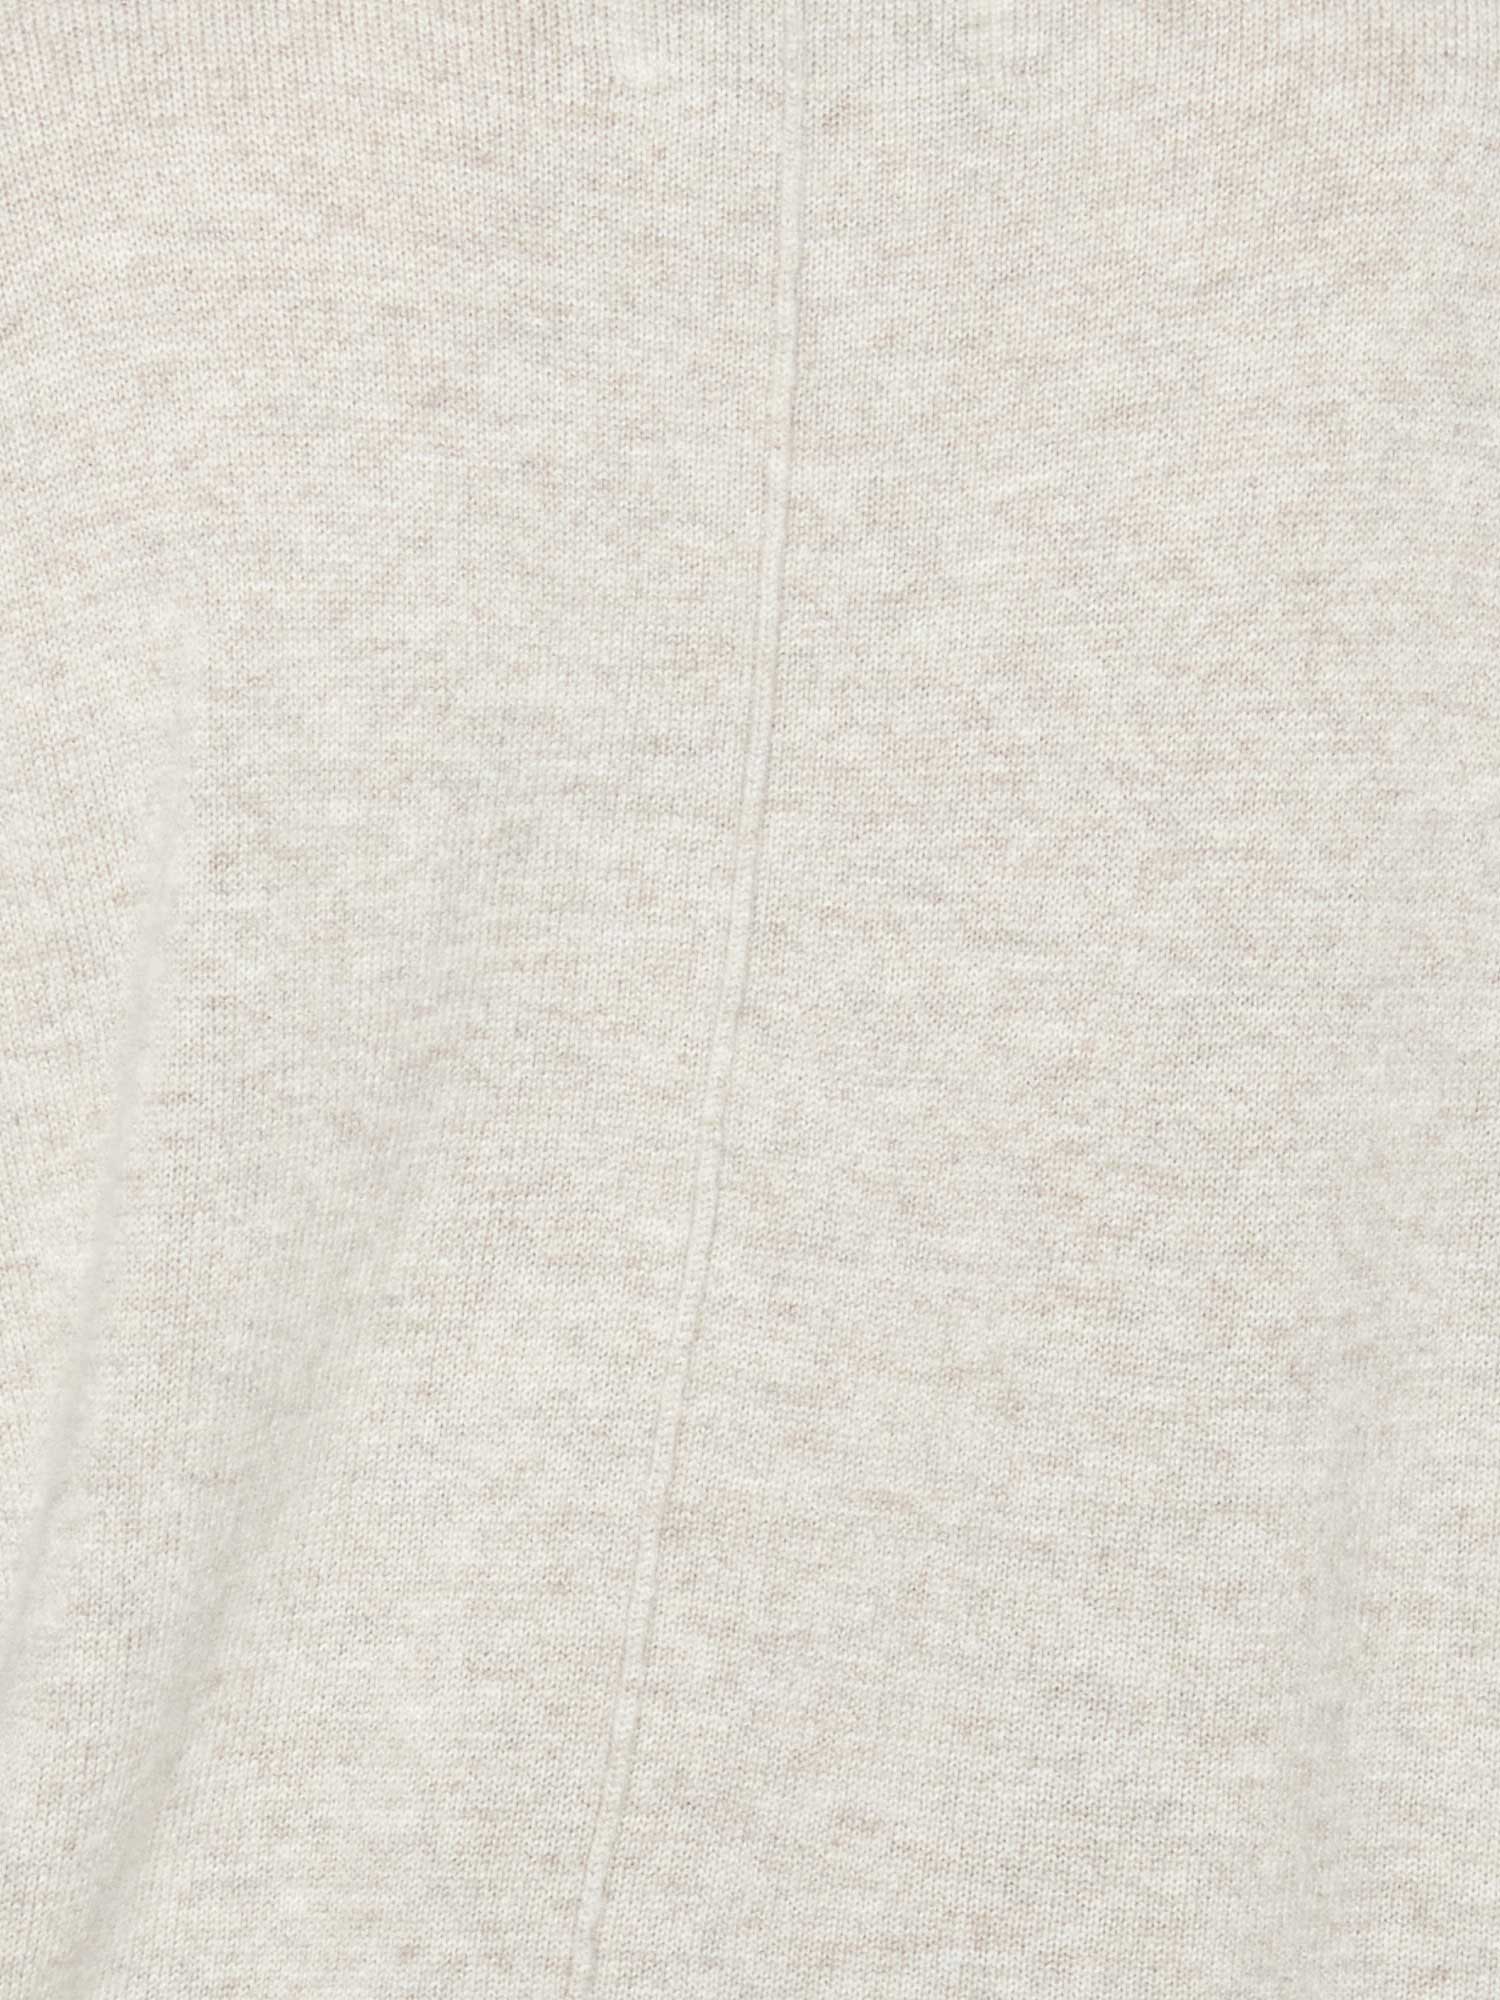 Callie light grey layered cardigan sweater close up 2